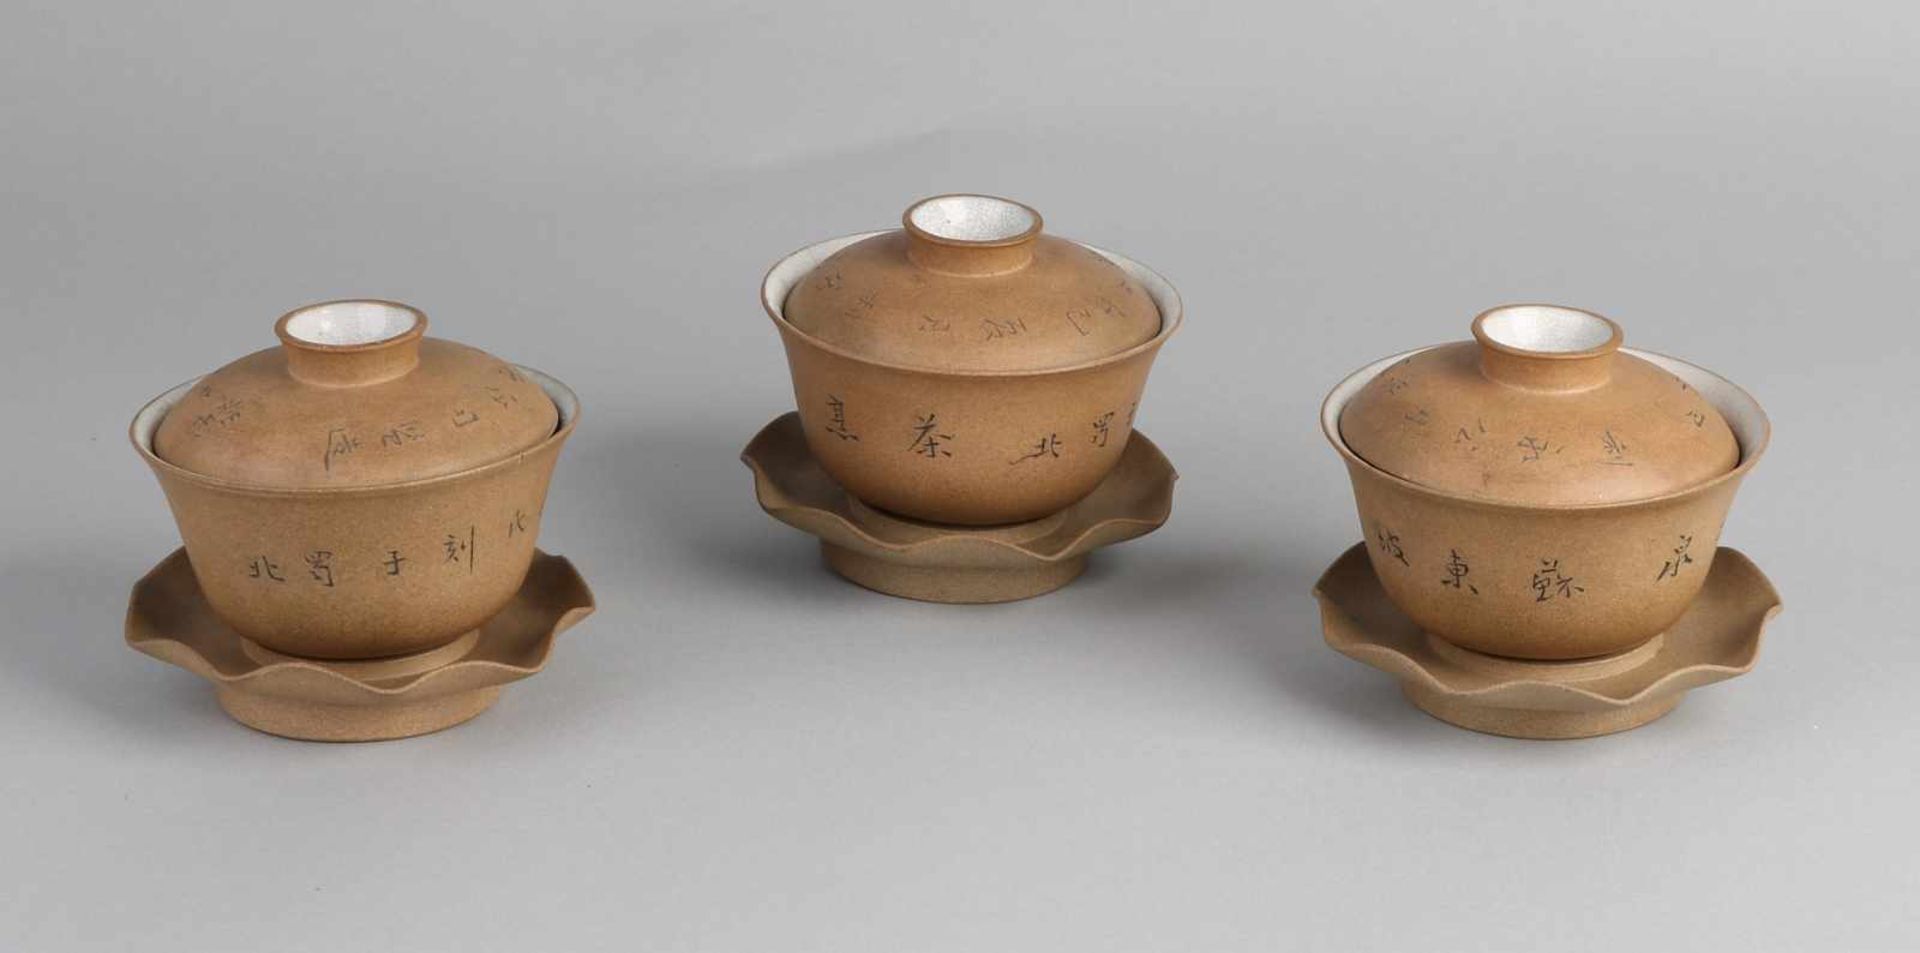 Drei separate dreiteilige Tassen aus chinesischem Porzellan mit Teeglasur und Reißverschlusstext.